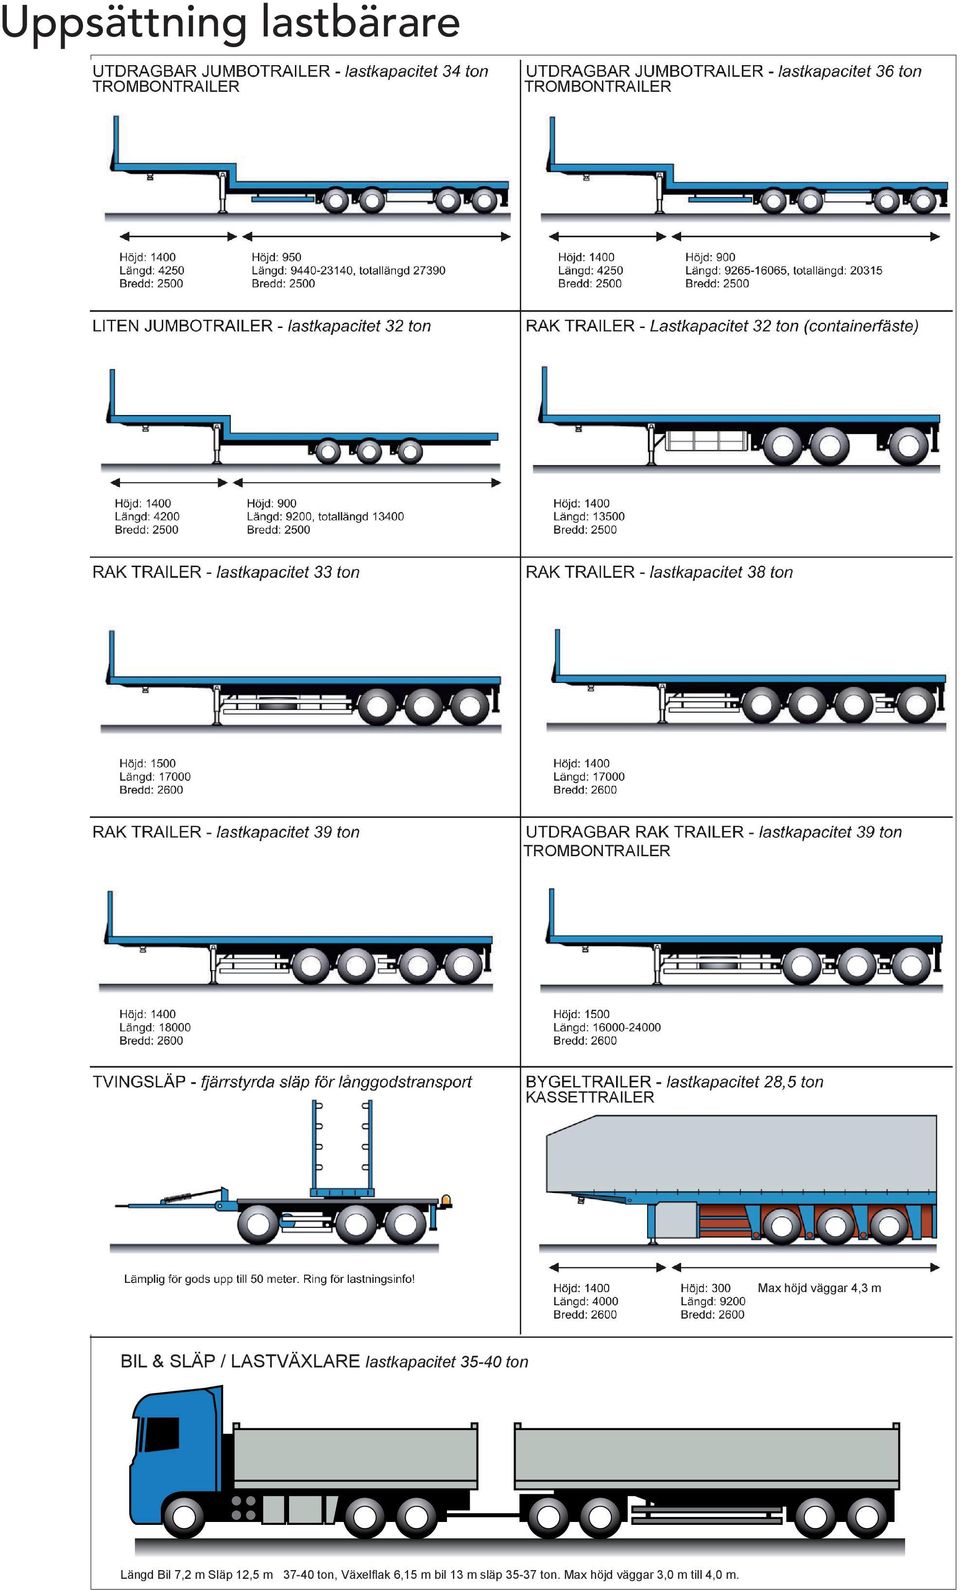 väggar 4,3 m BIL & SLÄP / LASTVÄXLARE lastkapacitet 35-40 ton Längd Bil 7,2 m